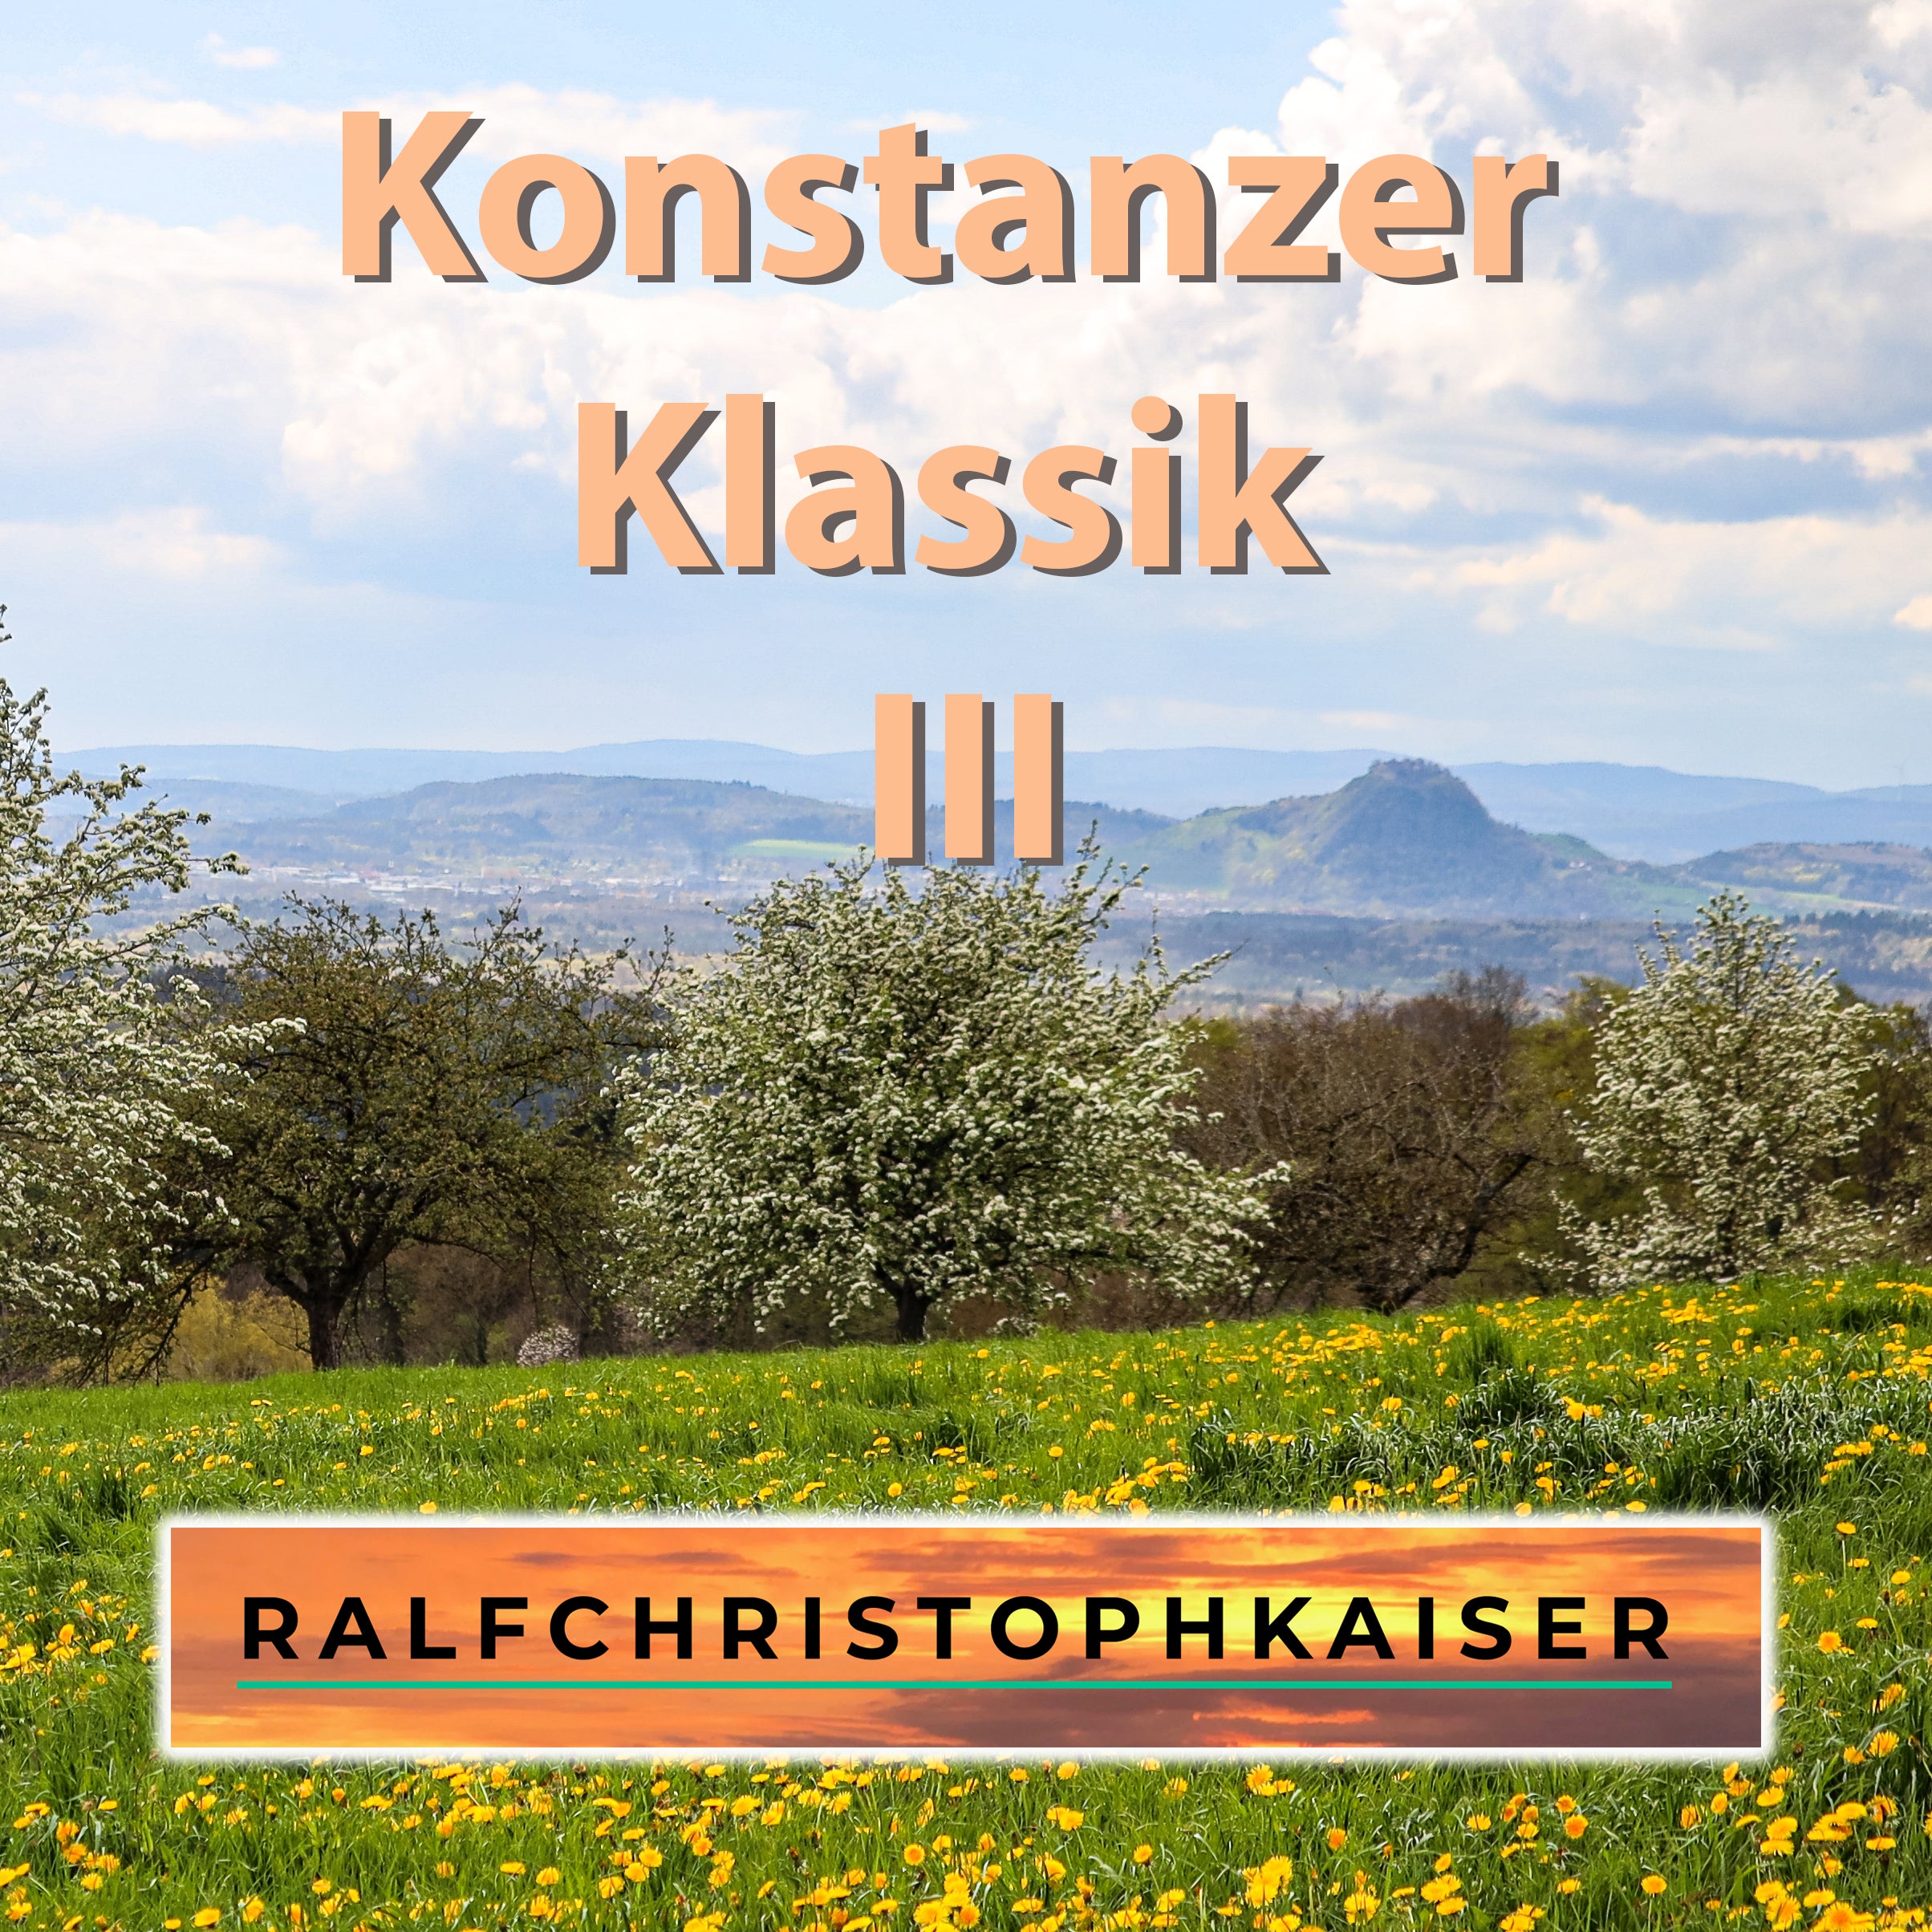 Konstanzer Klassik III, новый классический альбом с 10 сенсационными произведениями из Боденского озера, теперь доступен с HD-звуком и нотами для оркестра, включая миди-данные и визуальные эффекты.